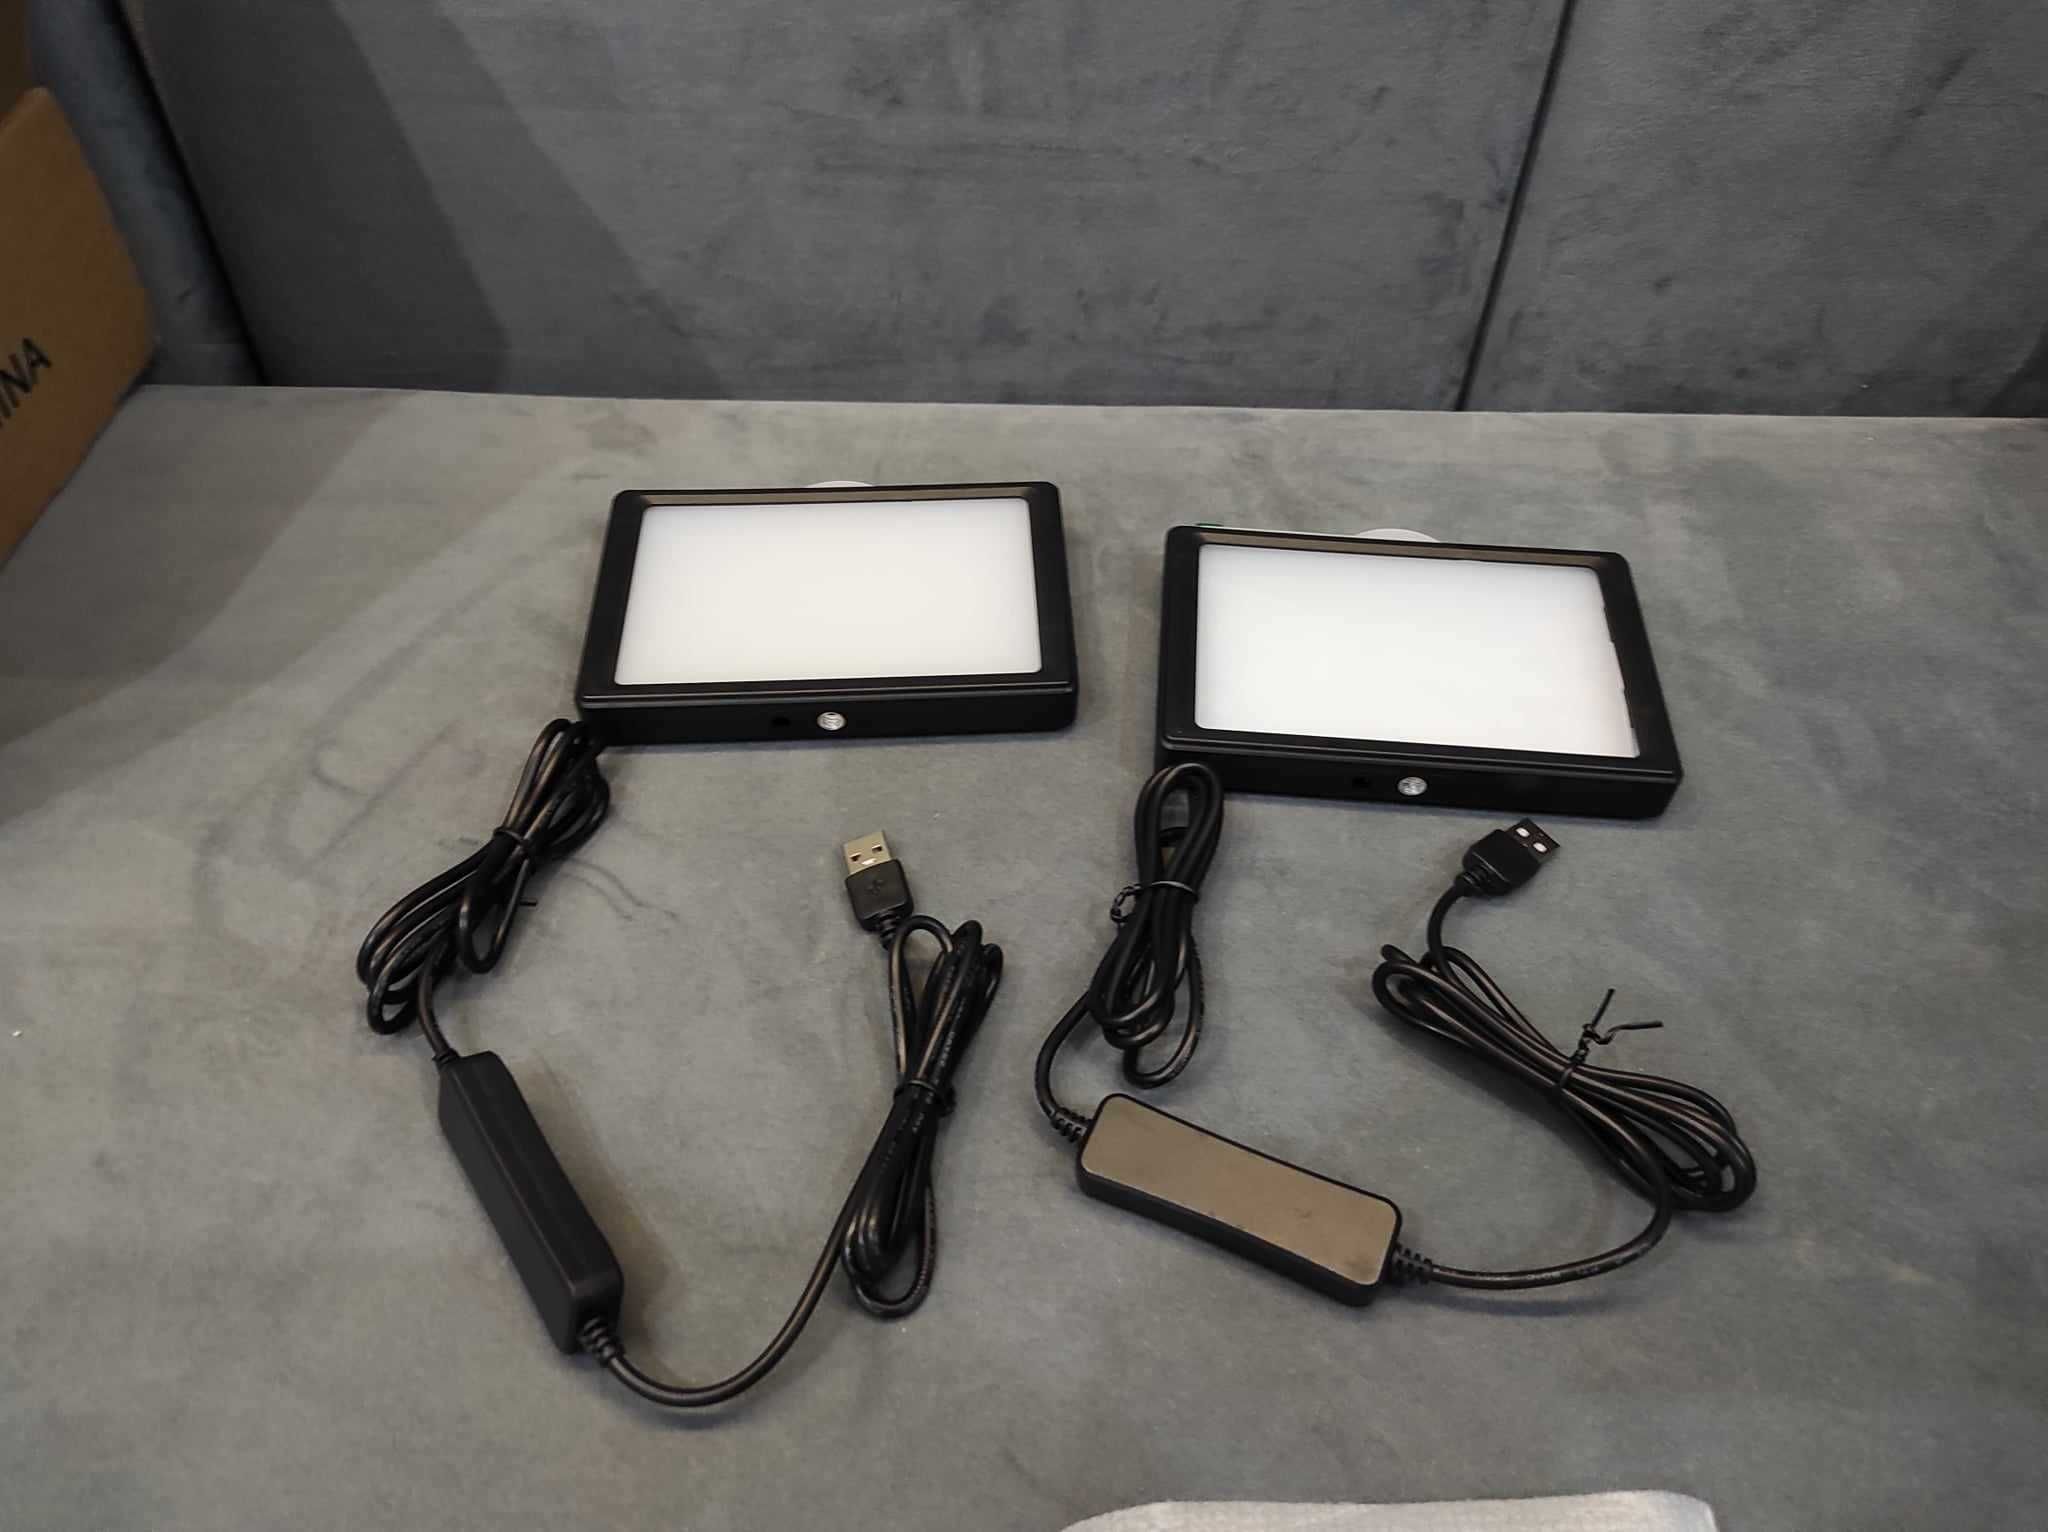 Lampy fotograficzne panelowe NEEWER mod: ZC-10S 10 W. 2 sztuki